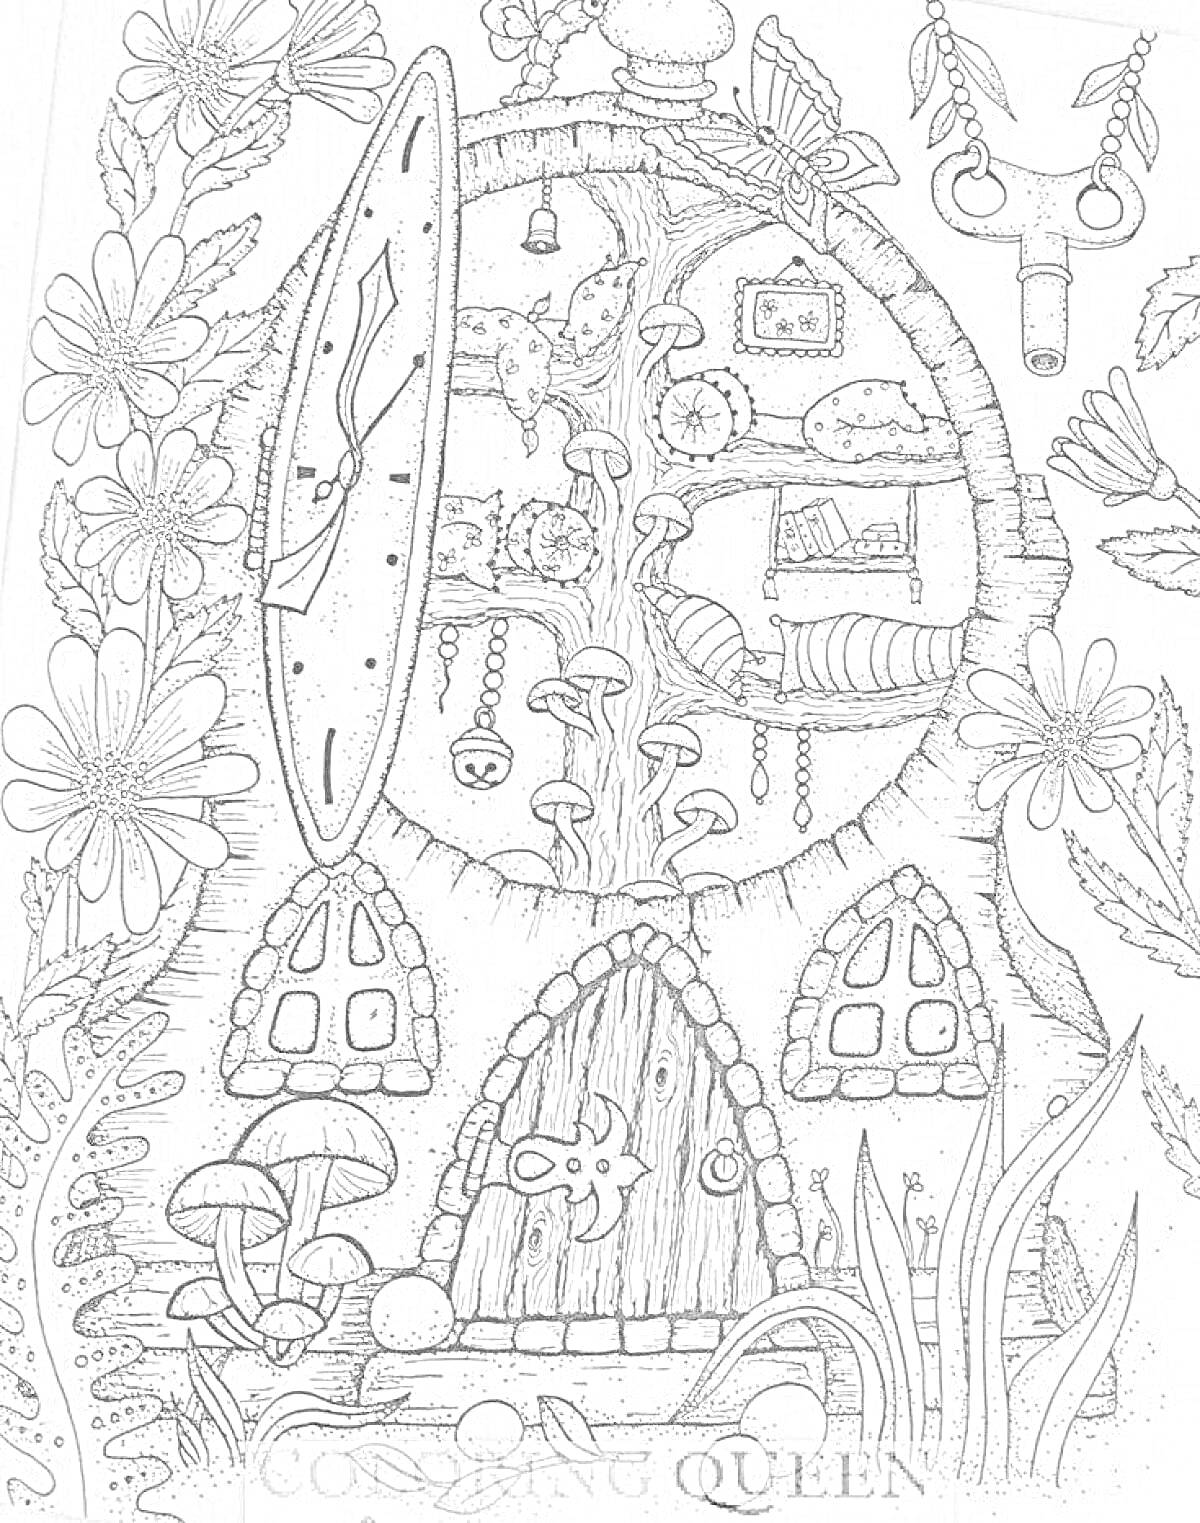 Домик с круглым окошком в дереве, с комнатами внутри, окруженный цветами, грибами и различными декоративными элементами